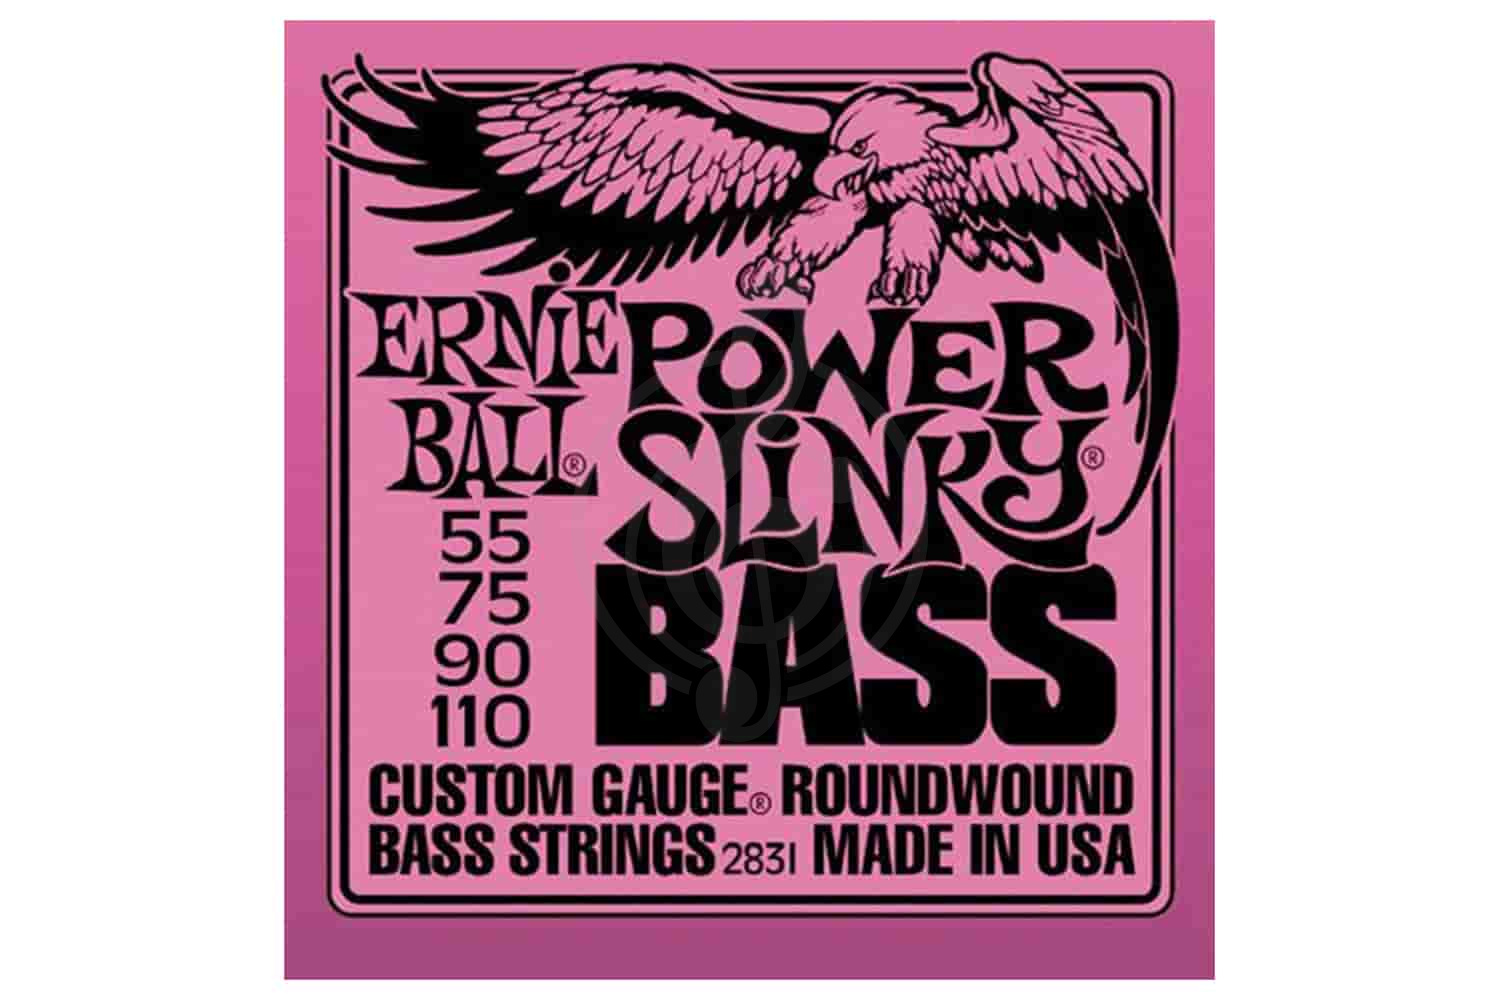 Струны для бас-гитары Струны для бас-гитар Прочие Ernie Ball 2831 - Струны для бас гитары 2831 - фото 1